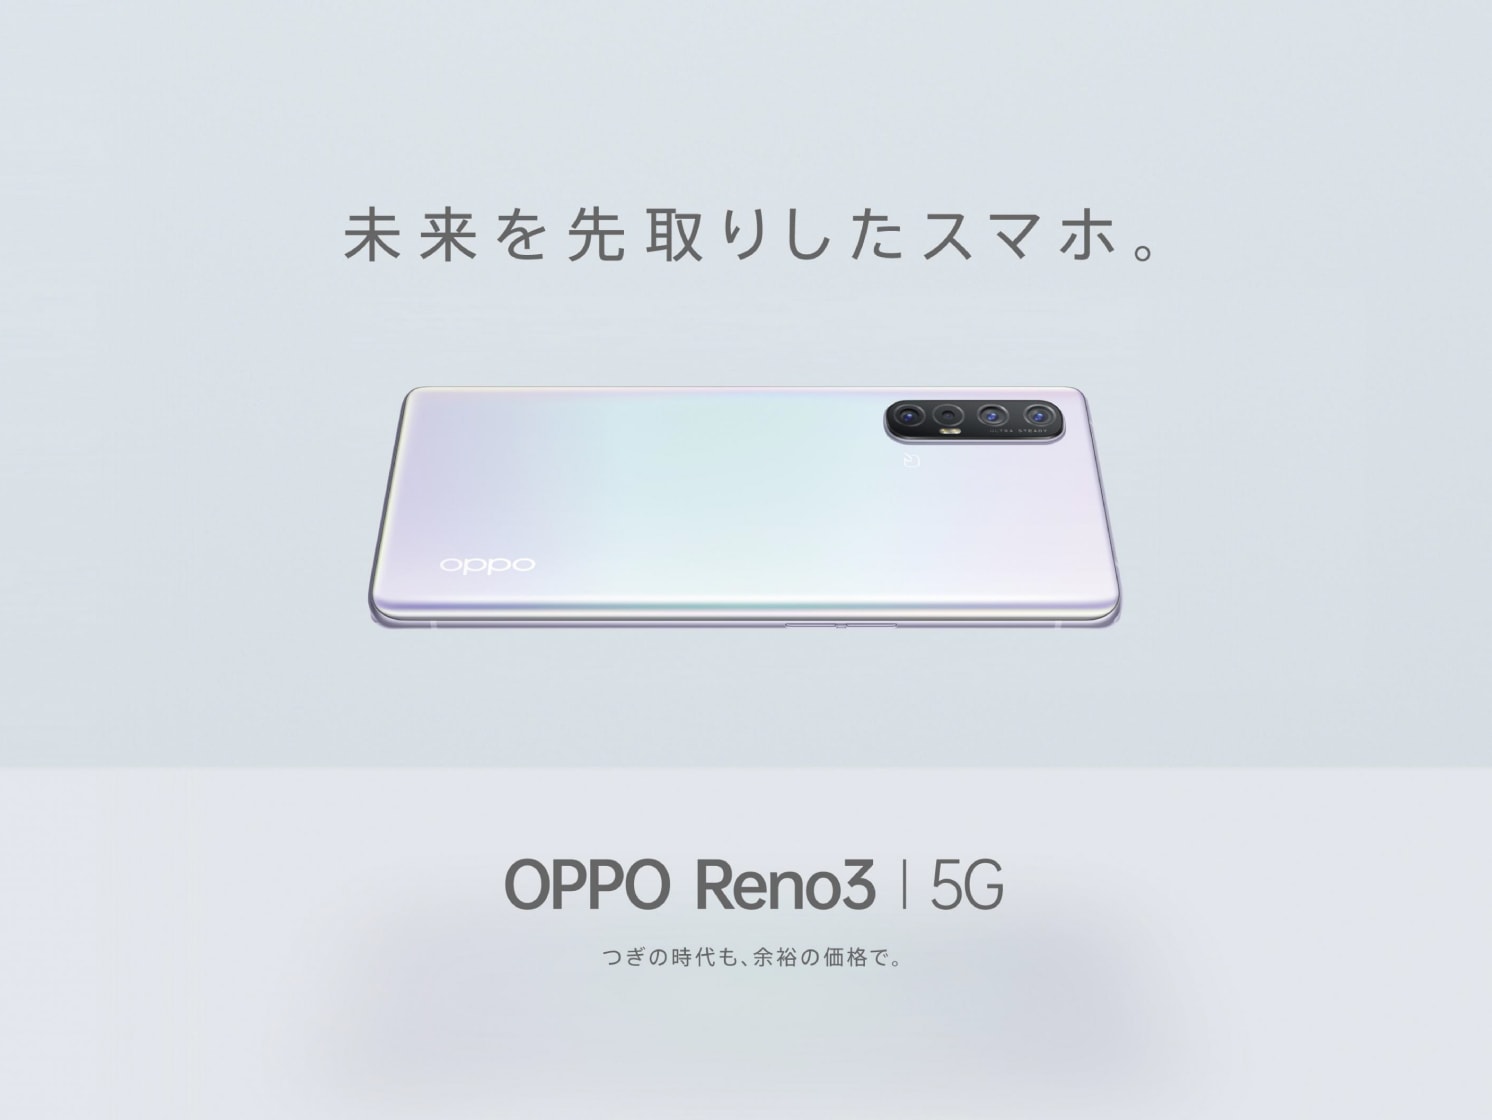 OPPOの5Gスマートフォン 「OPPO Reno3 5G」が ソフトバンクでの取り扱い開始 | オッポ